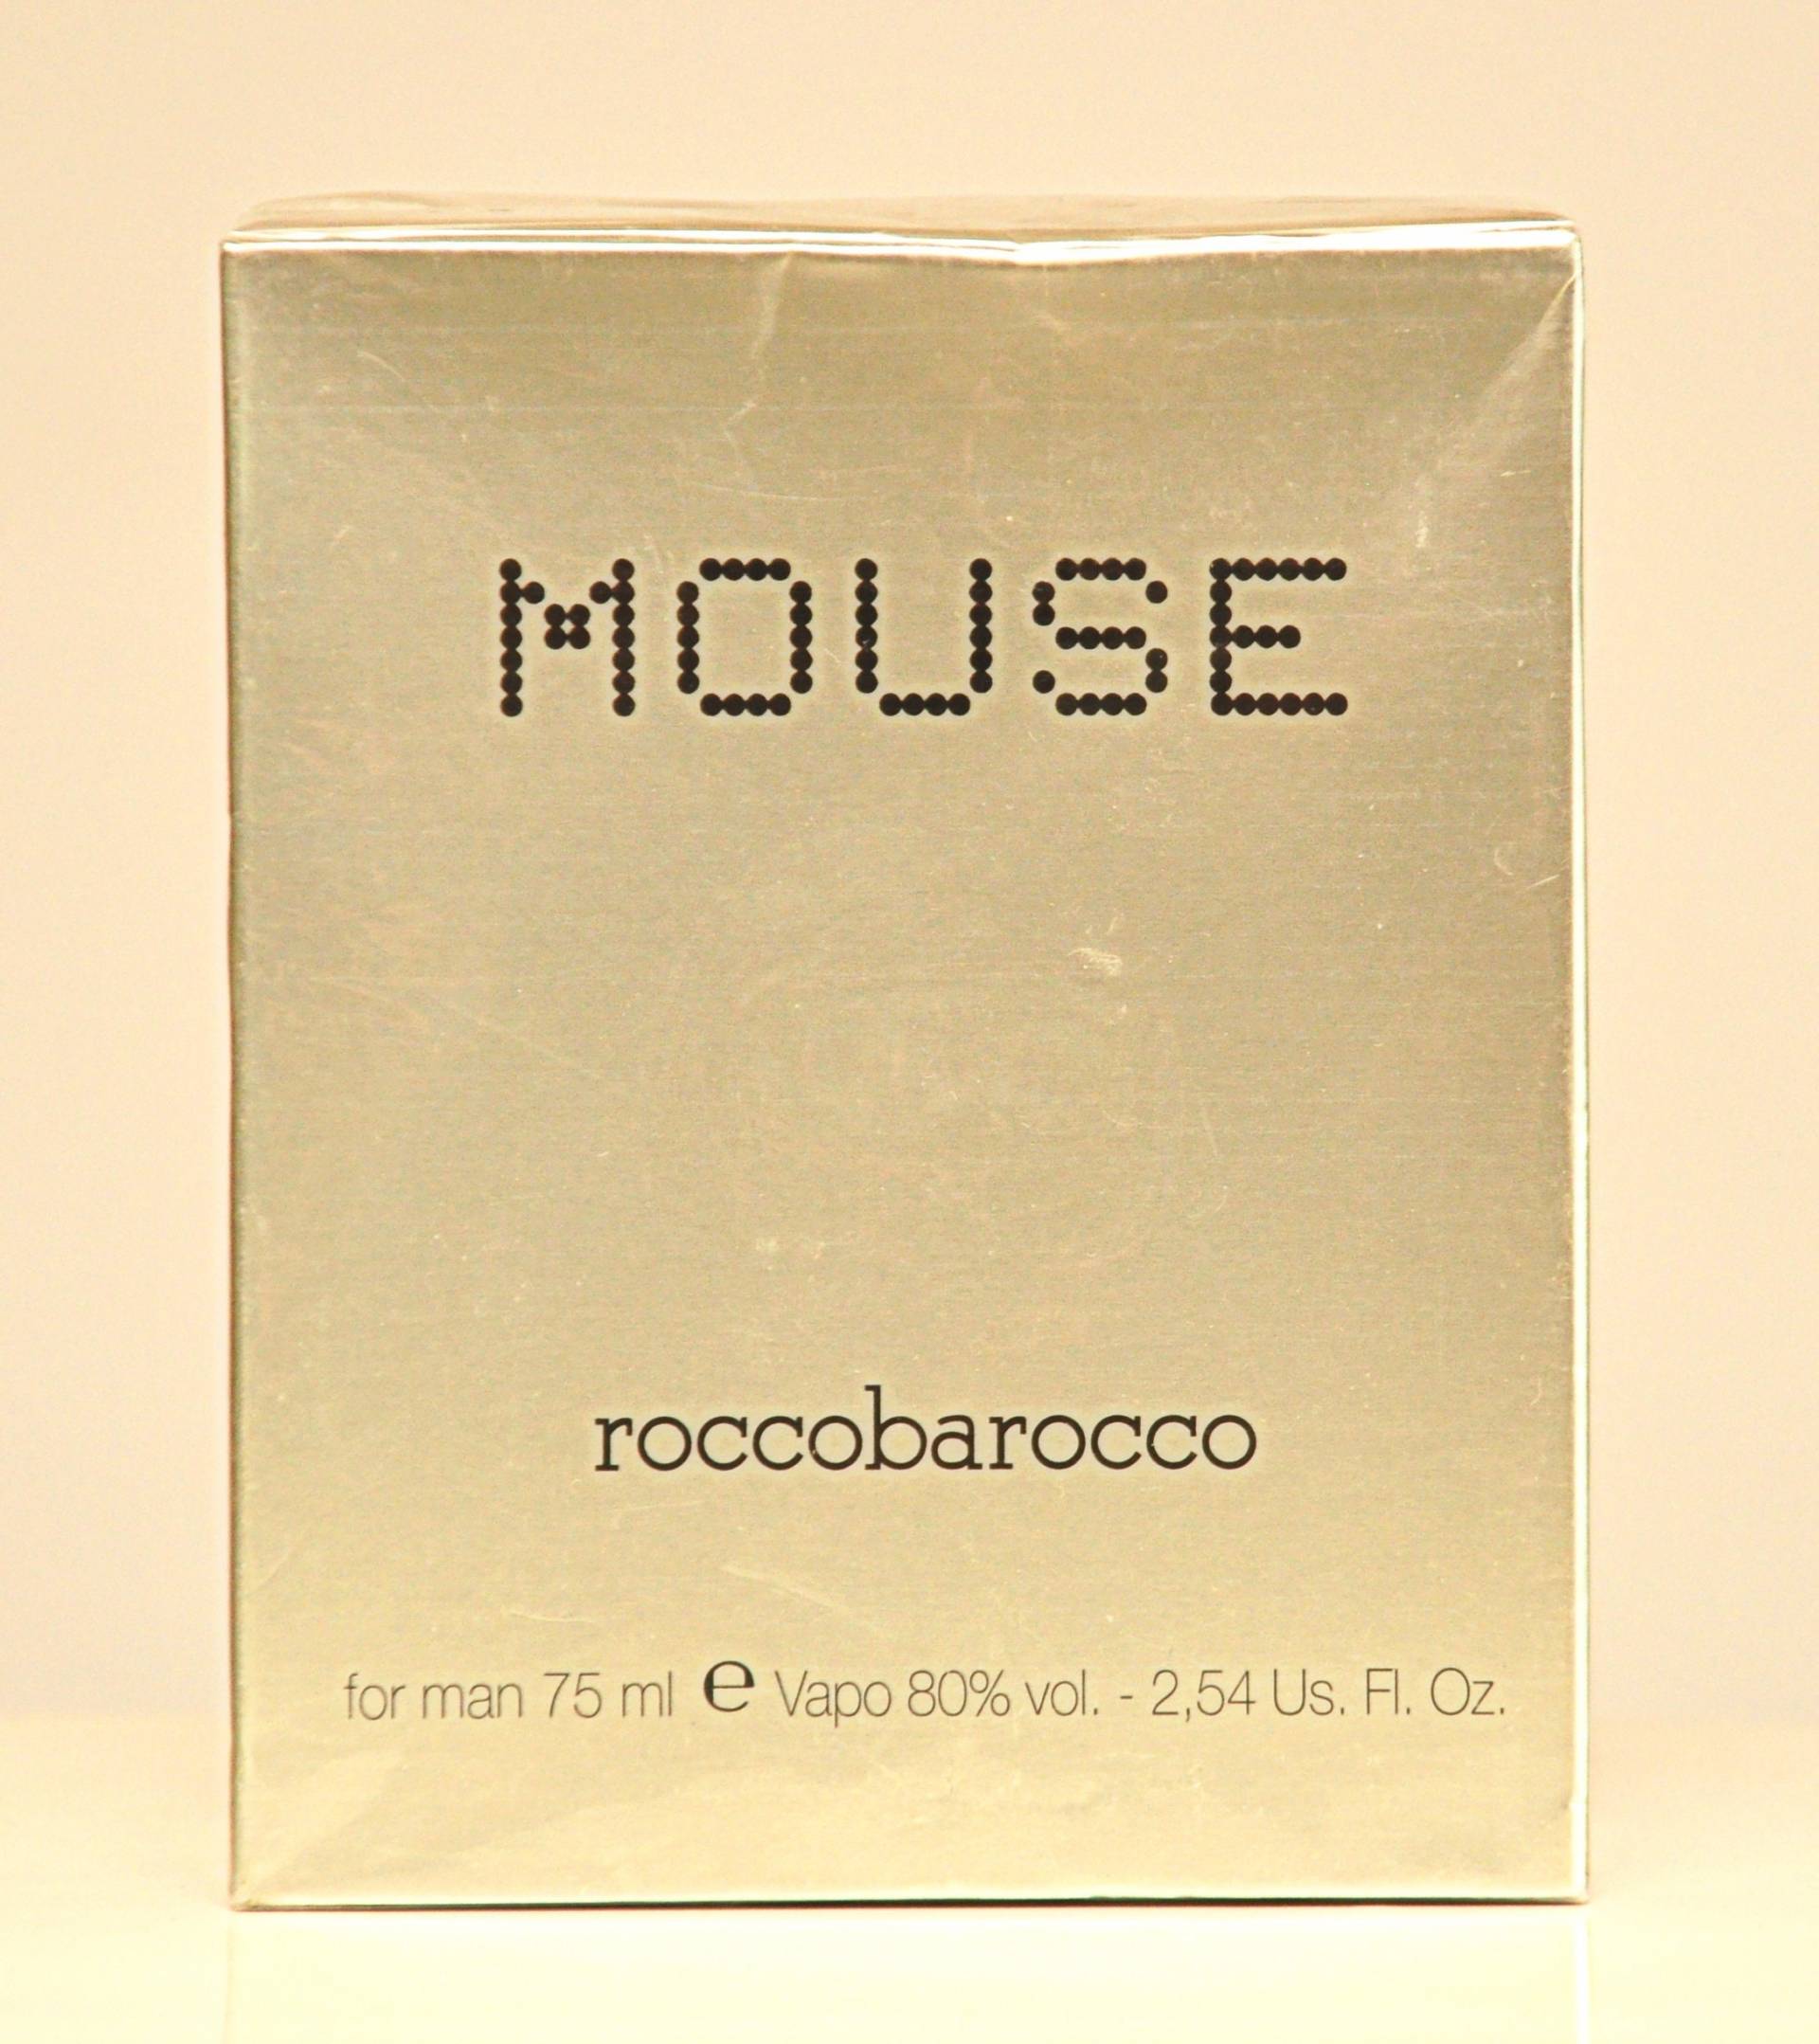 Roccobarocco Maus Für Man Eau De Toilette Edt 75Ml Spray Parfüm Rare Vintage 2001 Versiegelt von YourVintagePerfume